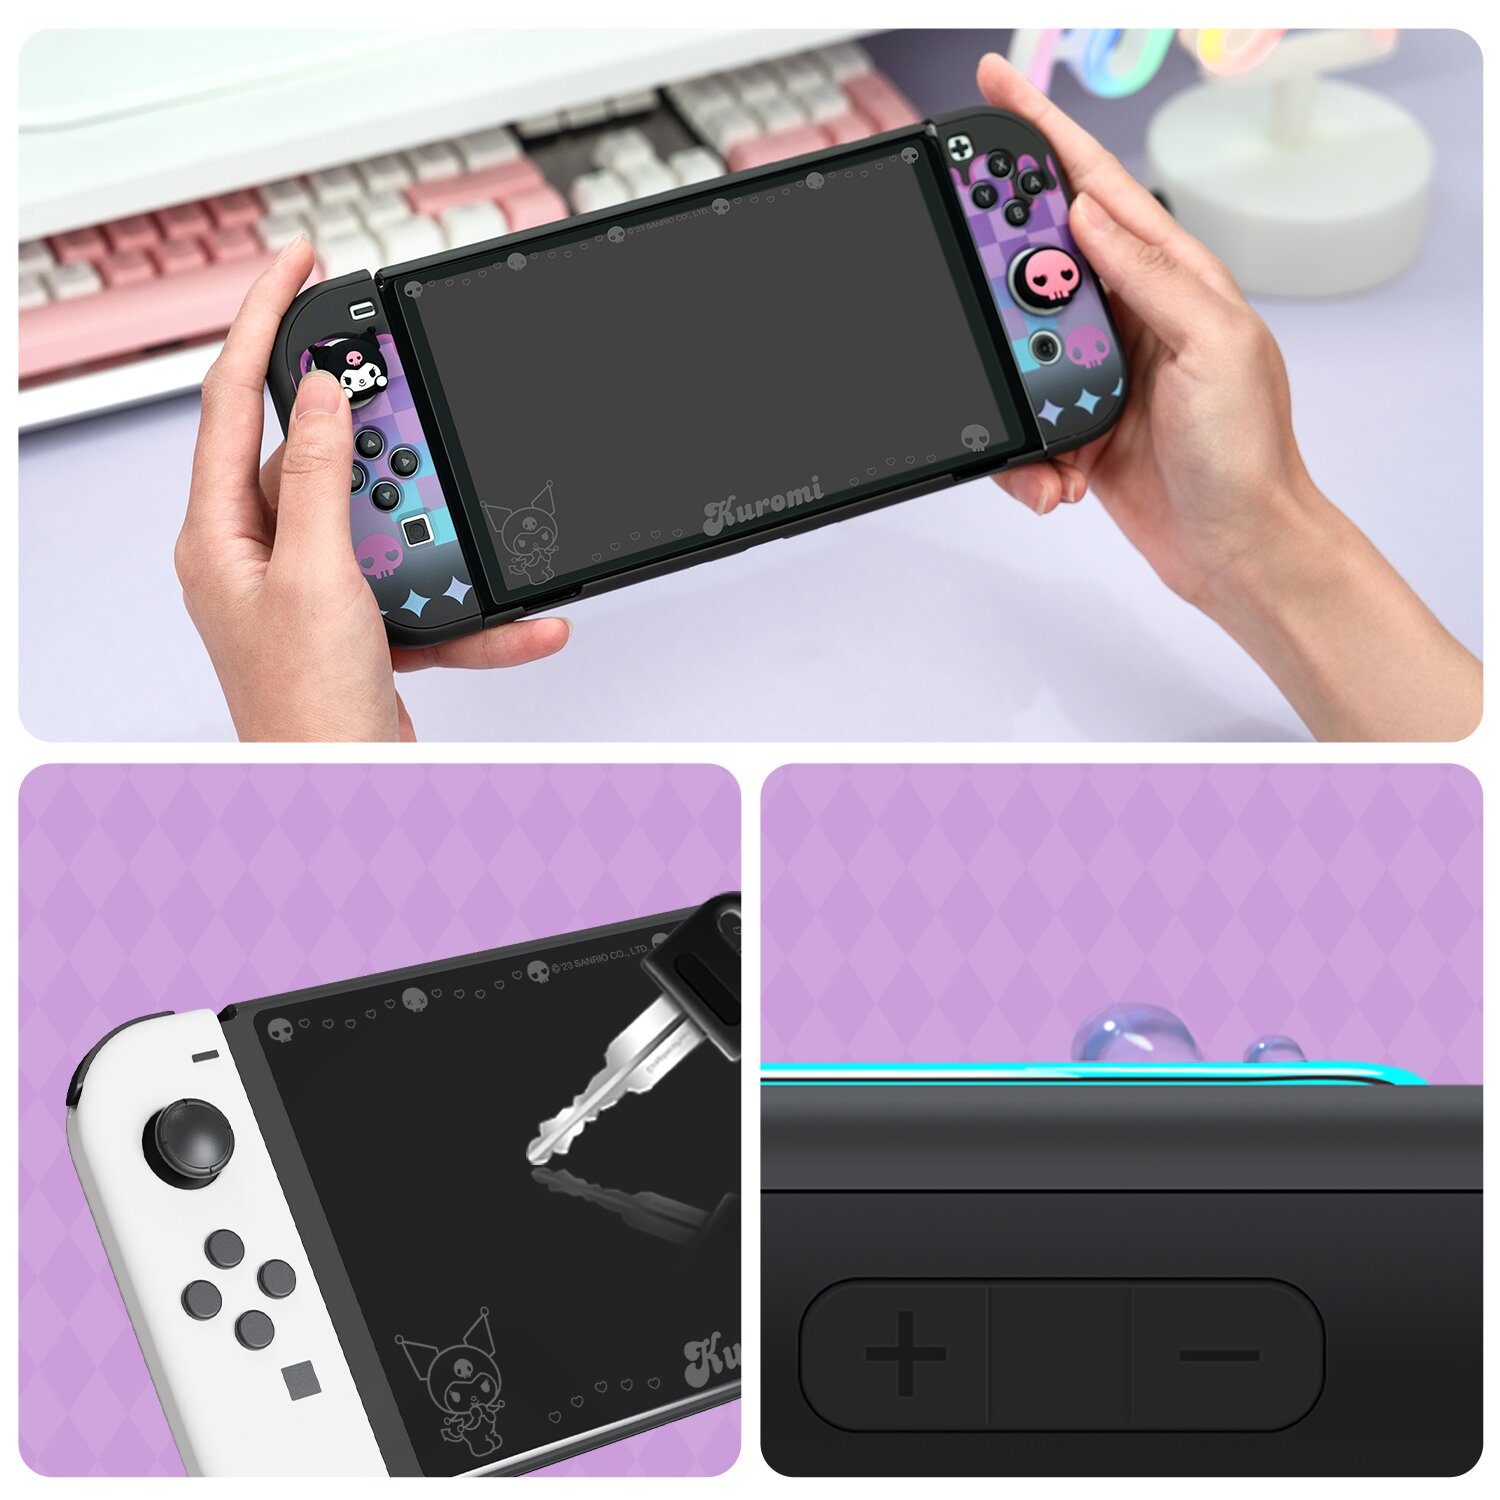 My Melody Nintendo Switch-skärmskydd 